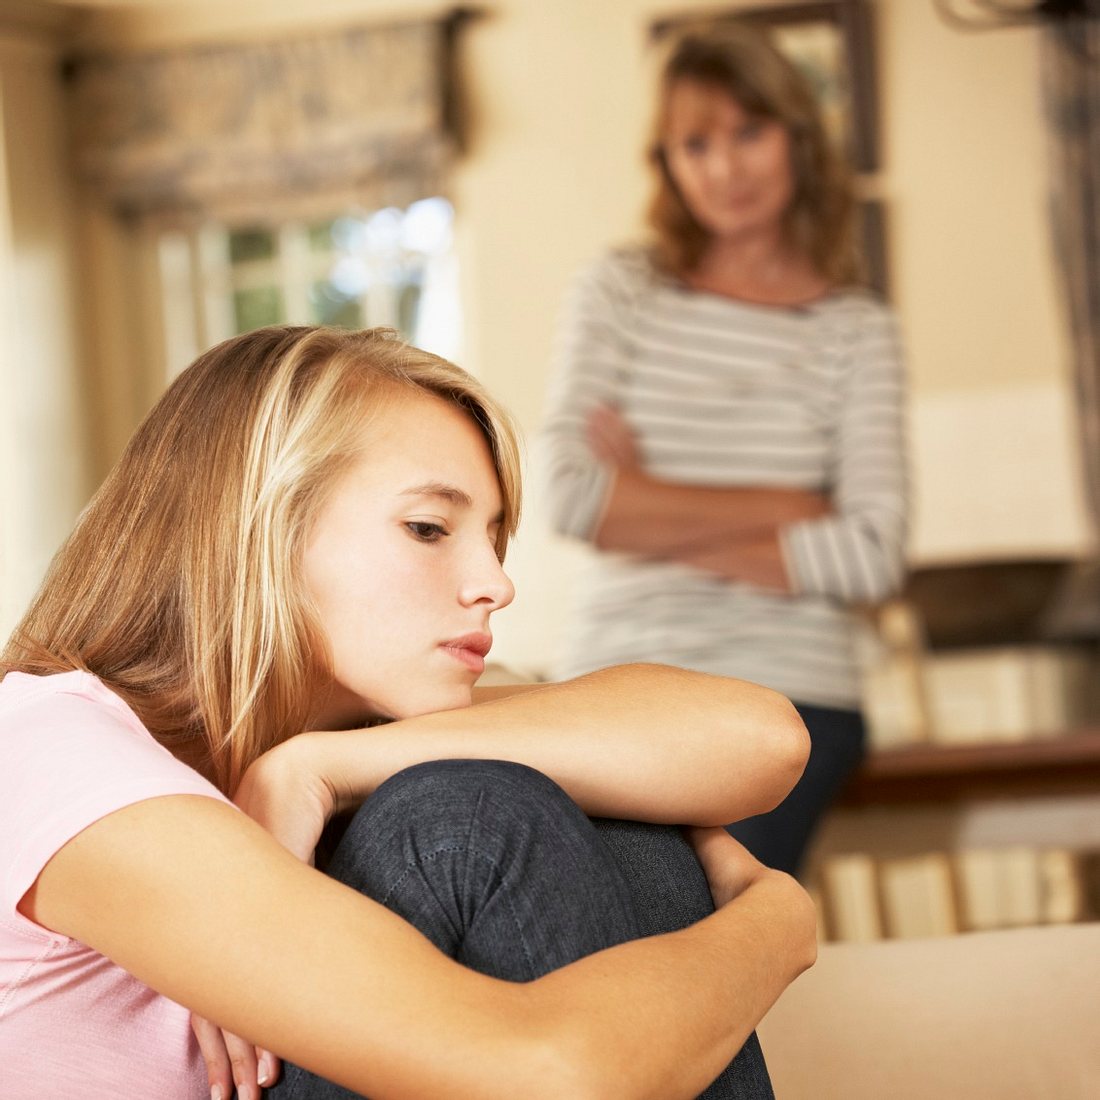 Hausarrest: Viele Jugendliche fühlen sich von ihren Eltern ungerecht behandelt!